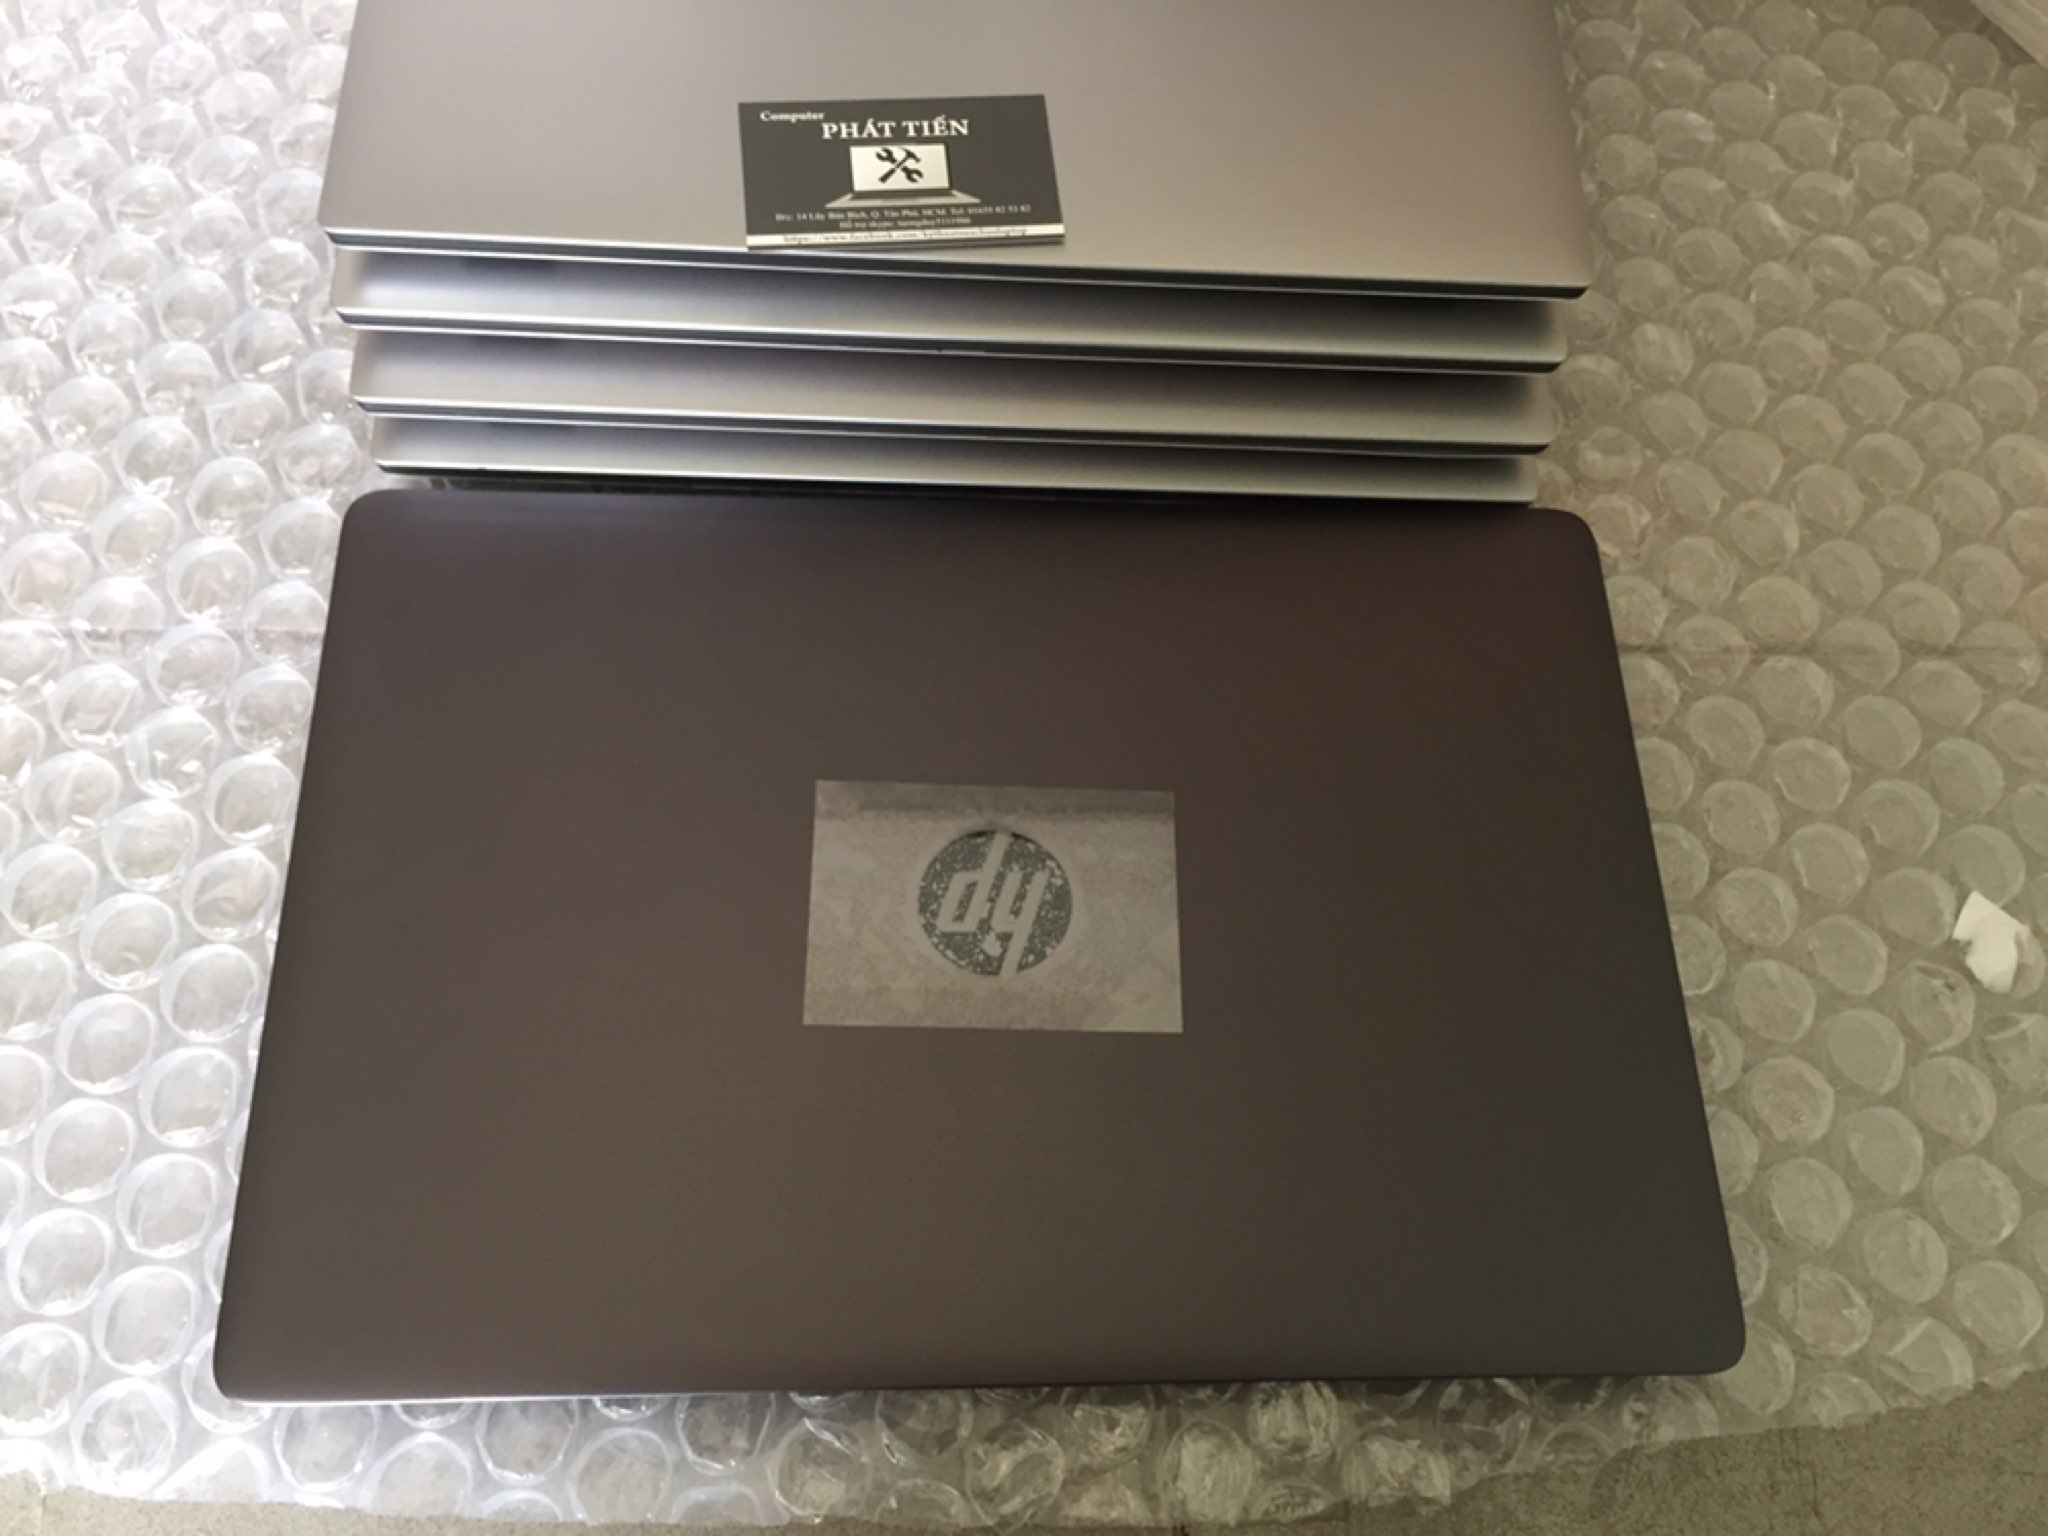 Laptop HP Studio G3, máy tính xách tay HP Studio G3 giá rẻ tp hcm